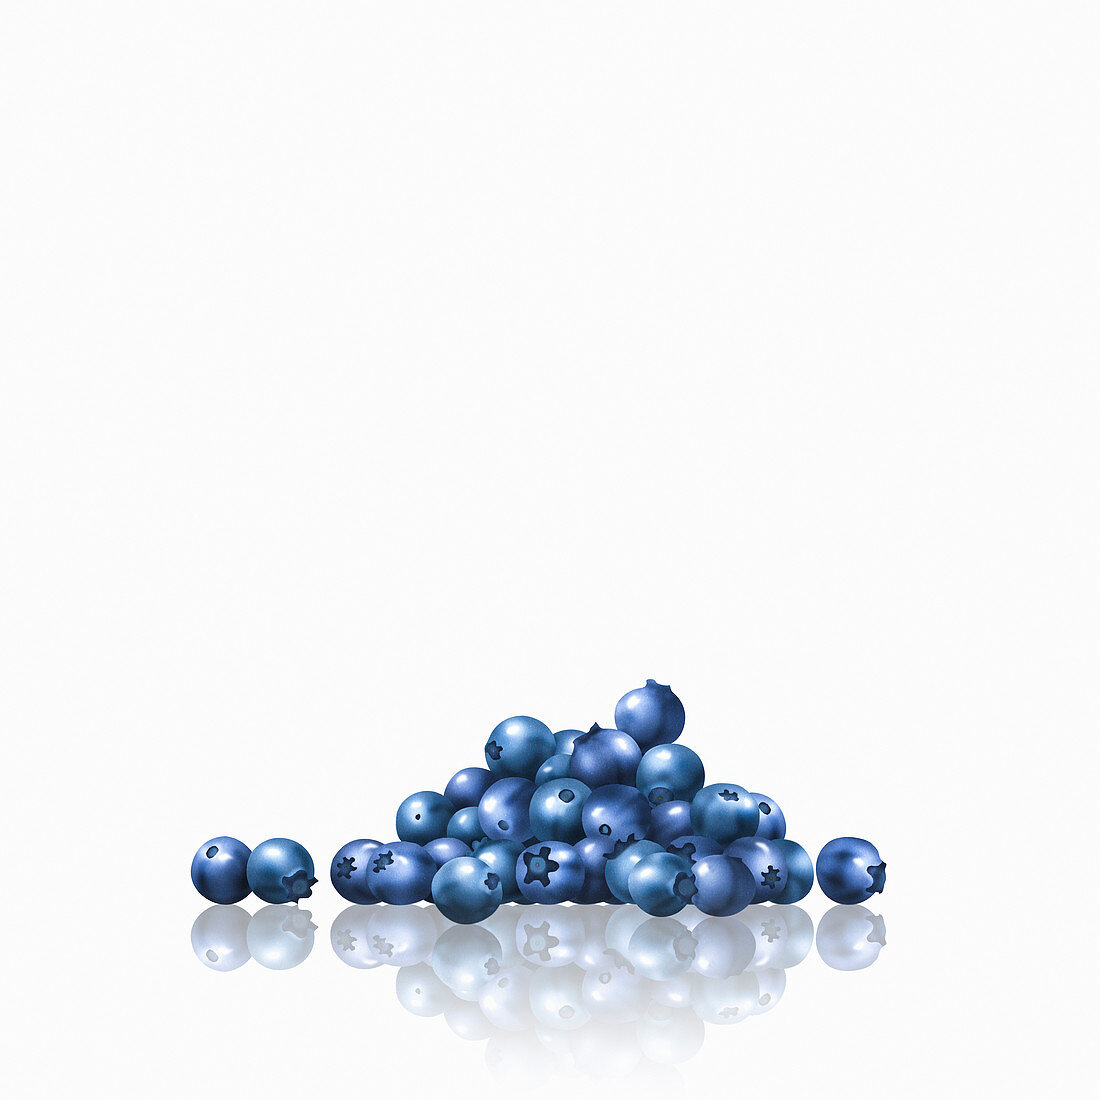 Pile of blueberries, illustration